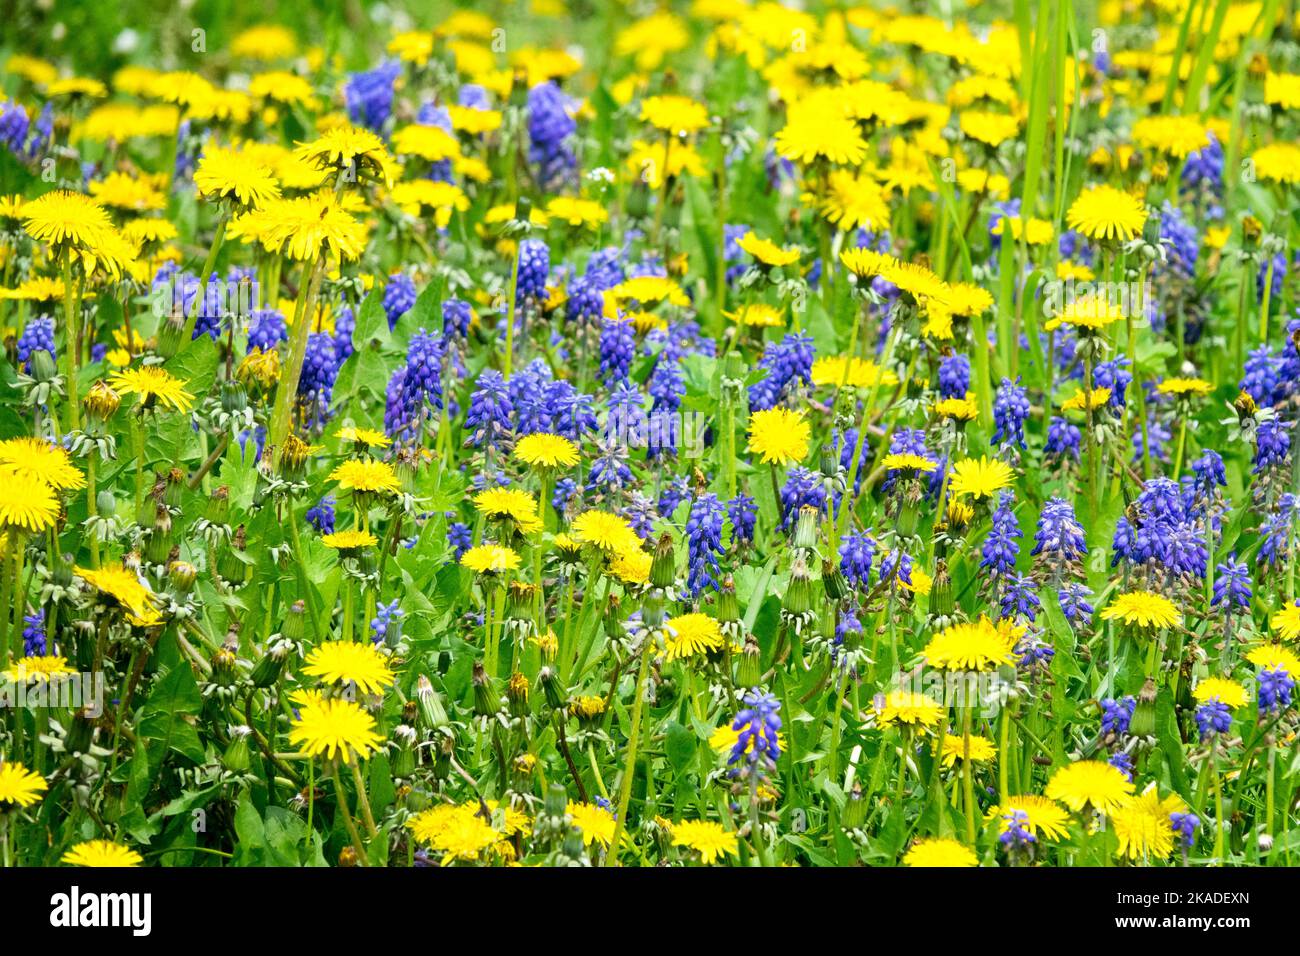 Muscari dans une pelouse Bleu jaune pissenlits Spring Garden Meadow Lawn Grape Jacinthe Muscari armeniacum Field Flowers Taraxacum officinale Springtime Banque D'Images